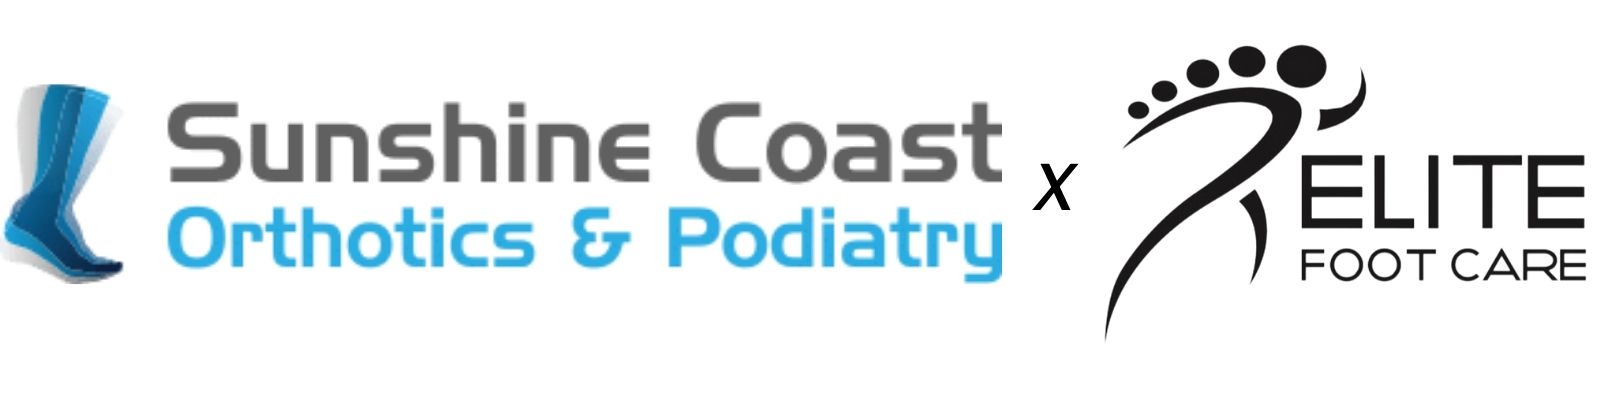 Sunshine Coast Orthotics & Podiatry